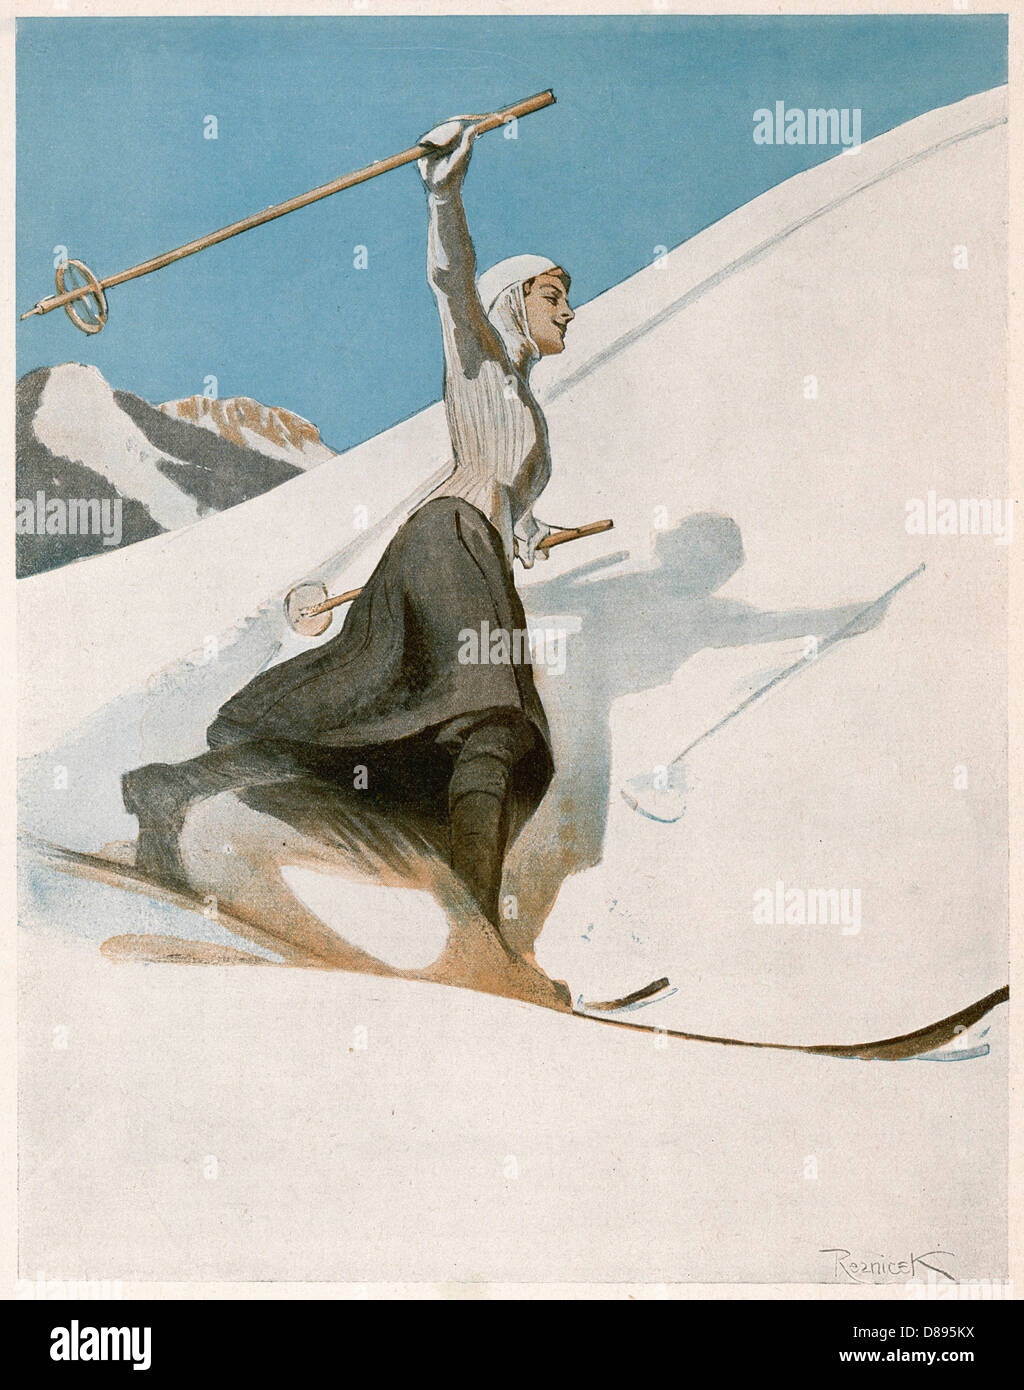 Lady Skier W - Arm Aloft Stock Photo